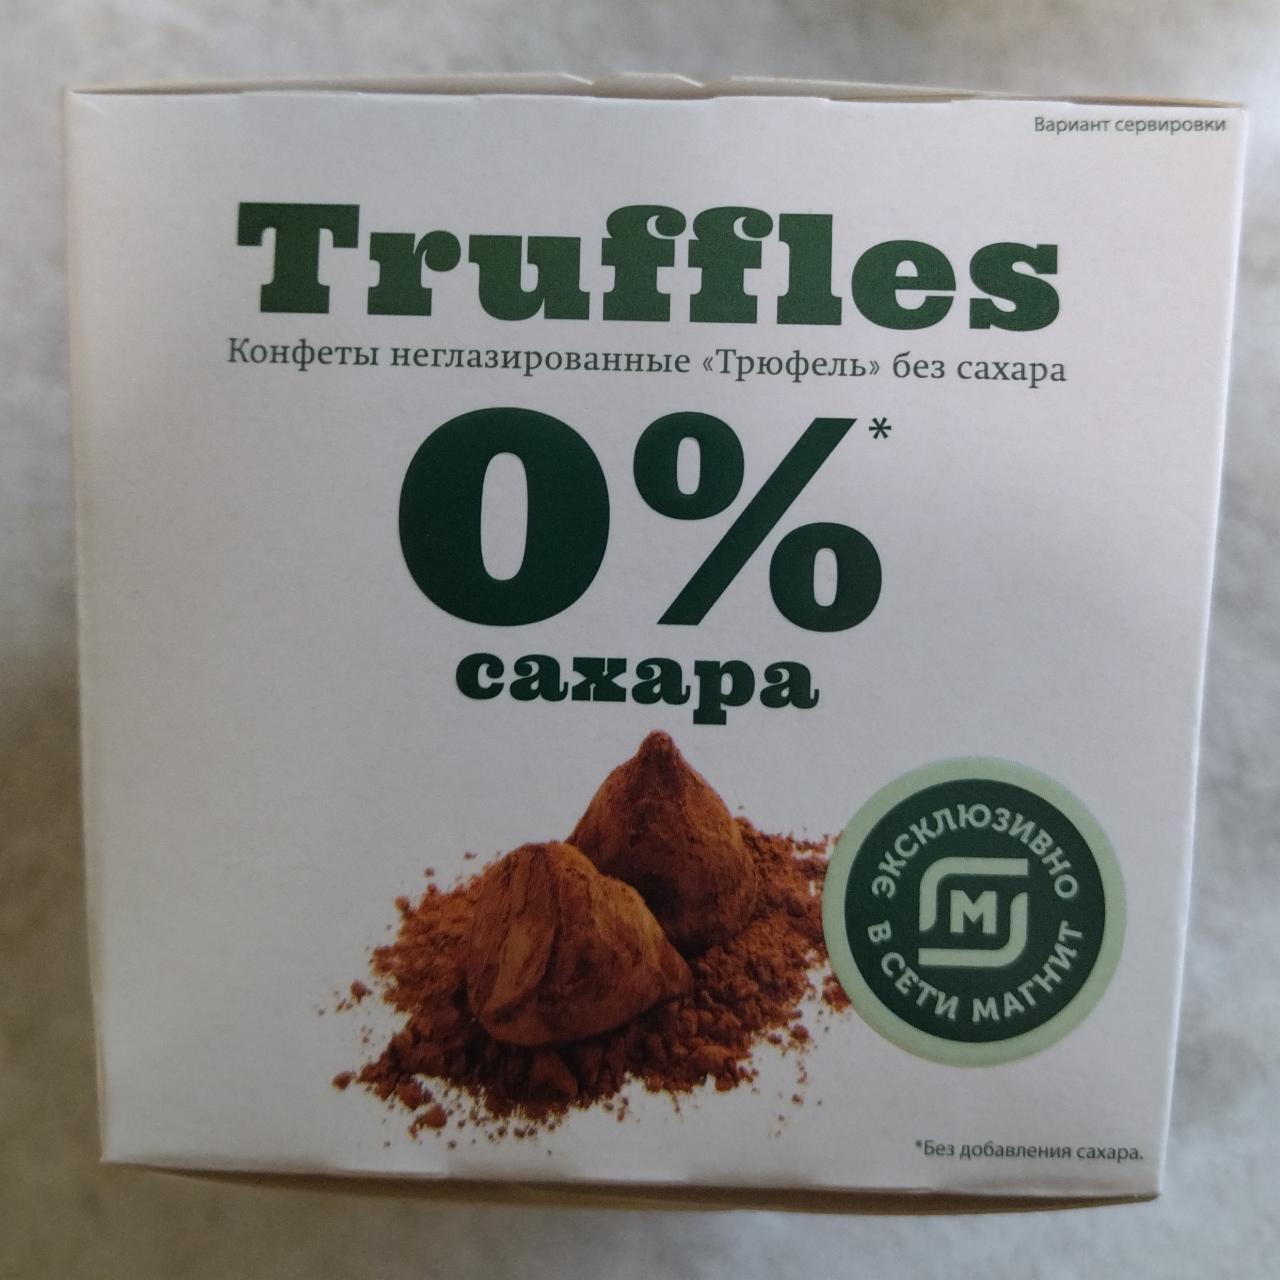 Фото - Конфеты неглазированные Трюфель без сахара Truffles Кондитер Кубани